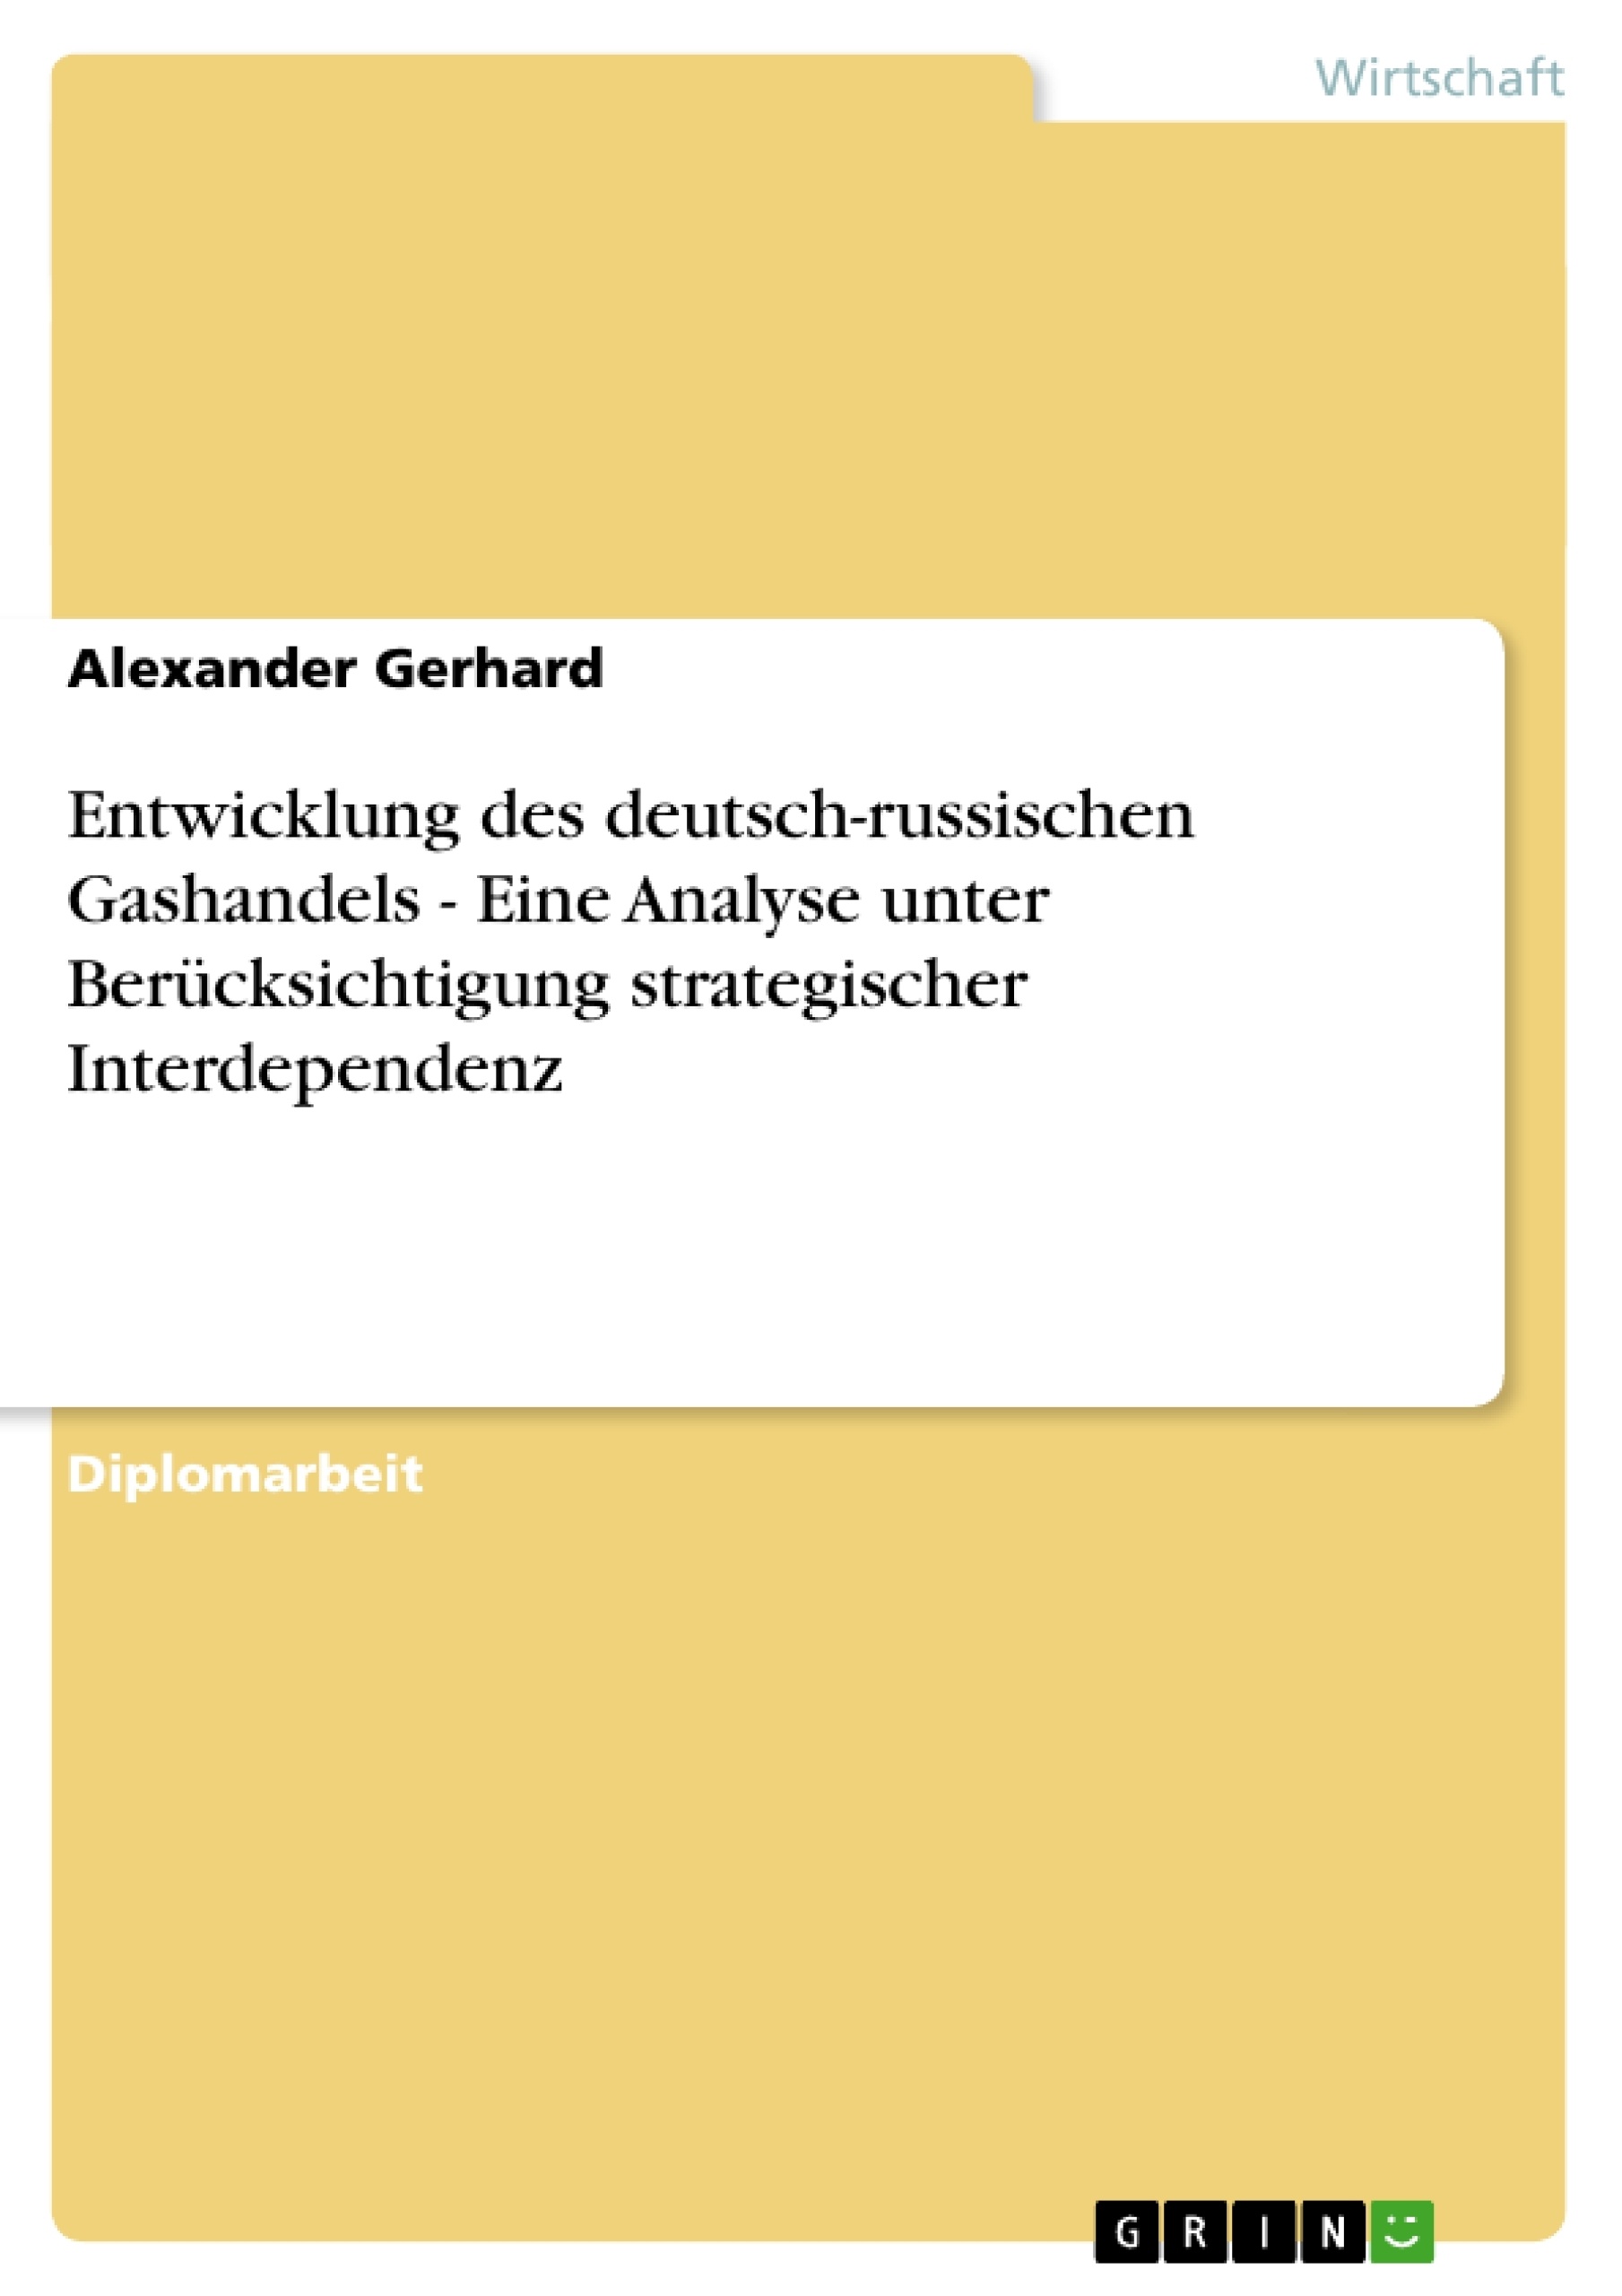 Título: Entwicklung des deutsch-russischen Gashandels - Eine Analyse unter Berücksichtigung strategischer Interdependenz